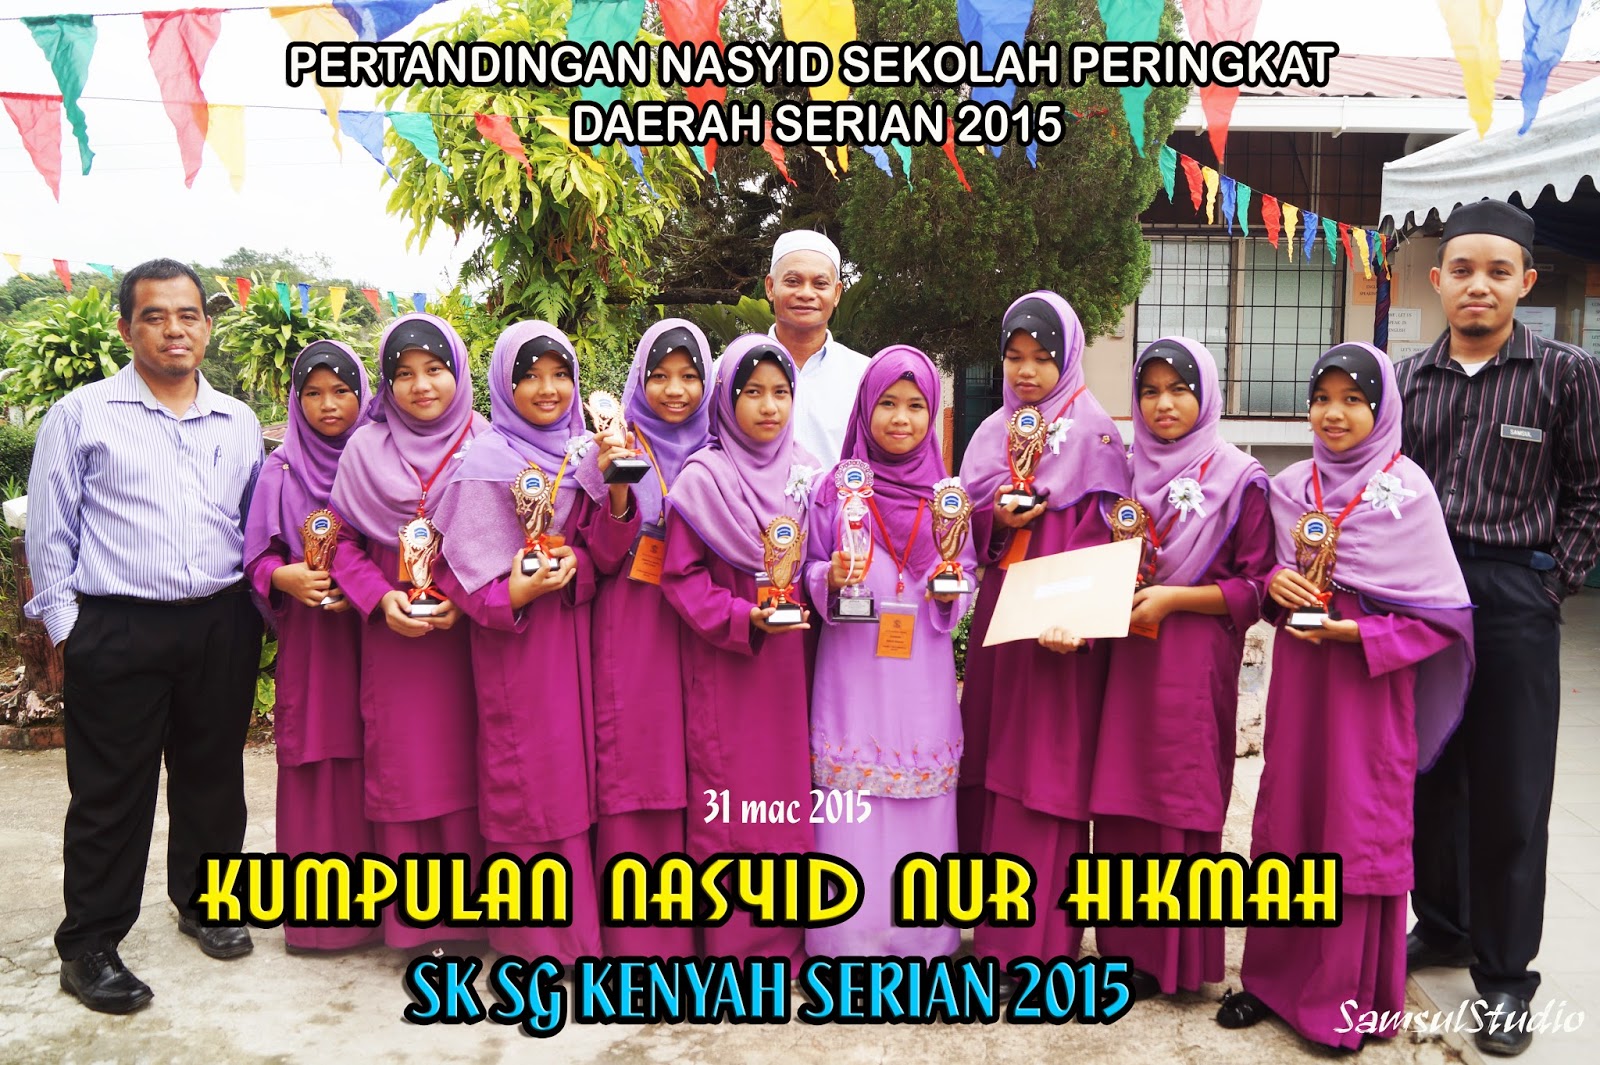 J-QAF SK SUNGAI KENYAH: Festival Nasyid Sekolah KPM Daerah 